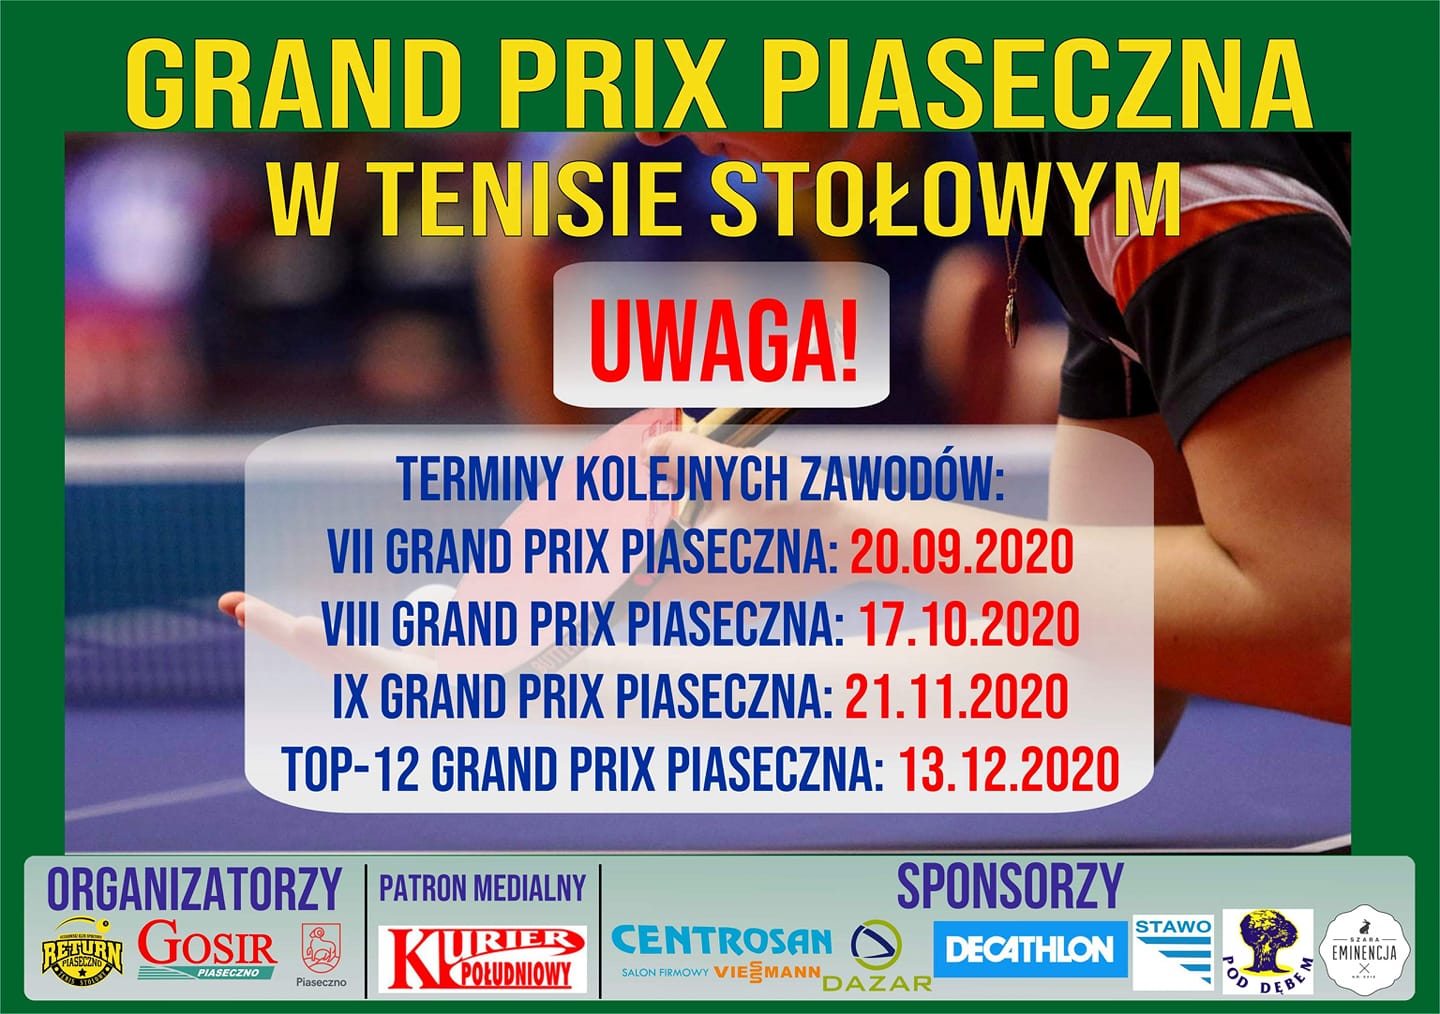 Plakat turnieju Grand Prix Piaseczna w tenisie stołowym 2019/2020 - VIII Turniej